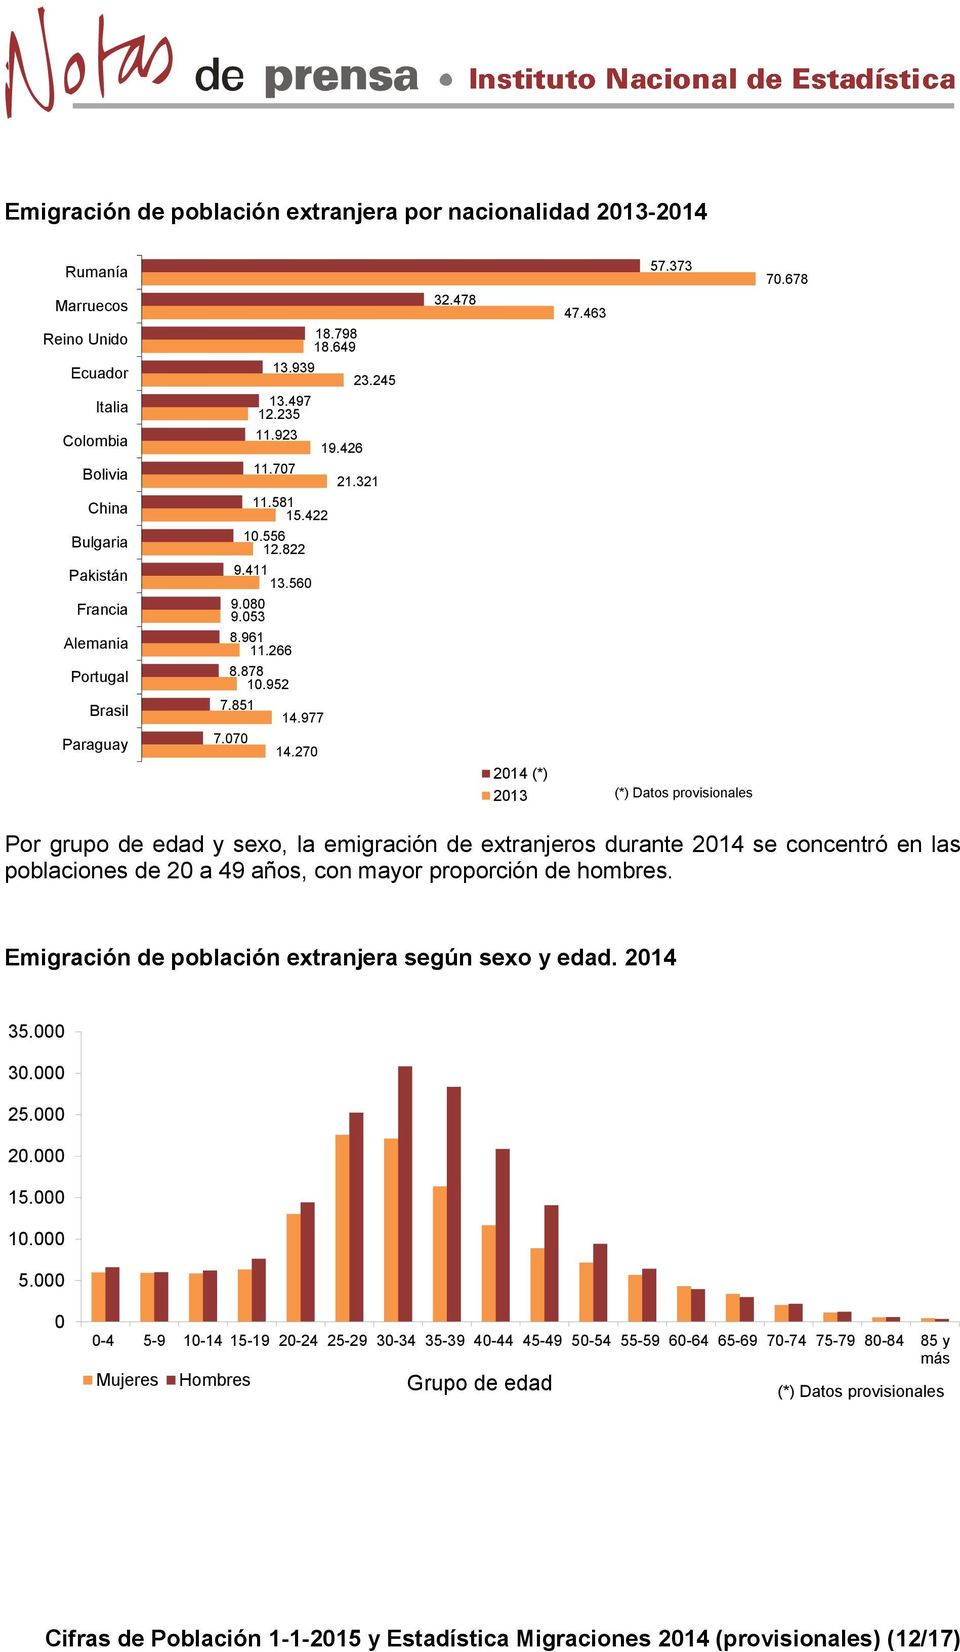 373 2014 (*) 2013 70.678 Por grupo de edad y sexo, la emigración de extranjeros durante 2014 se concentró en las poblaciones de 20 a 49 años, con mayor proporción de hombres.